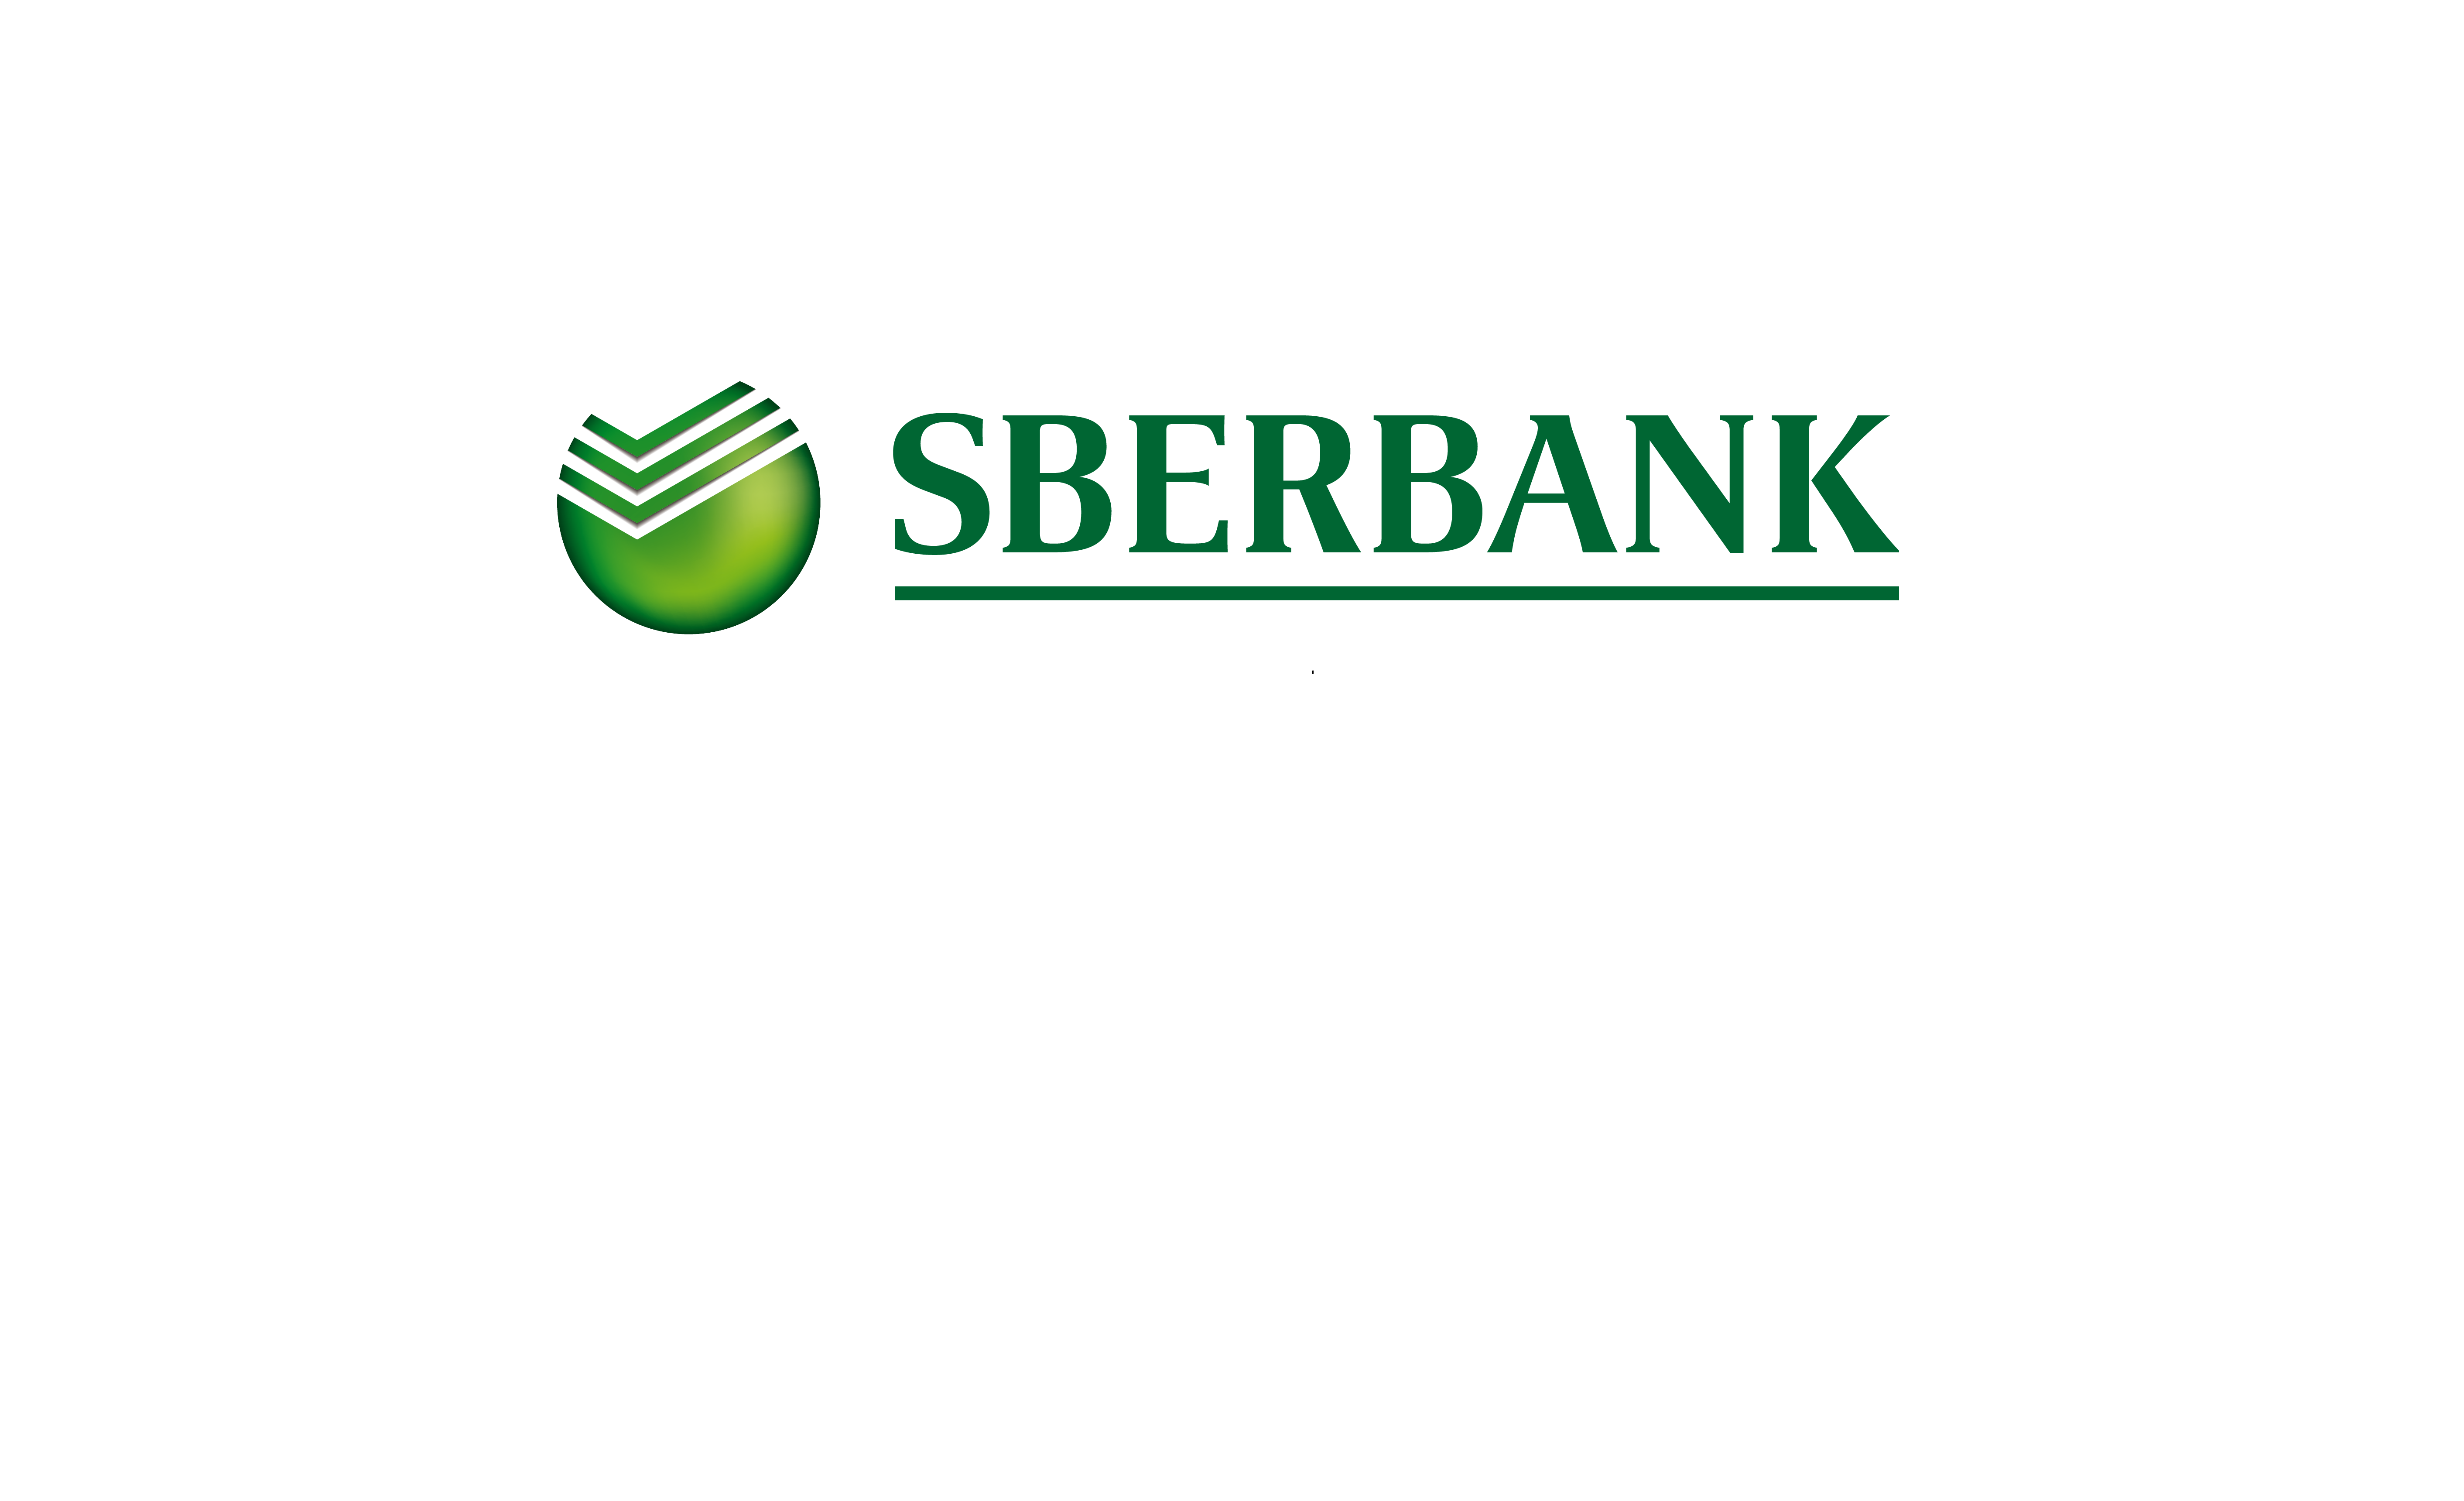 Sberbank com p rvrxx. Сбербанк управление активами лого. Сбертянн. Сбербанк всегда рядом. Надпись Сбербанк.